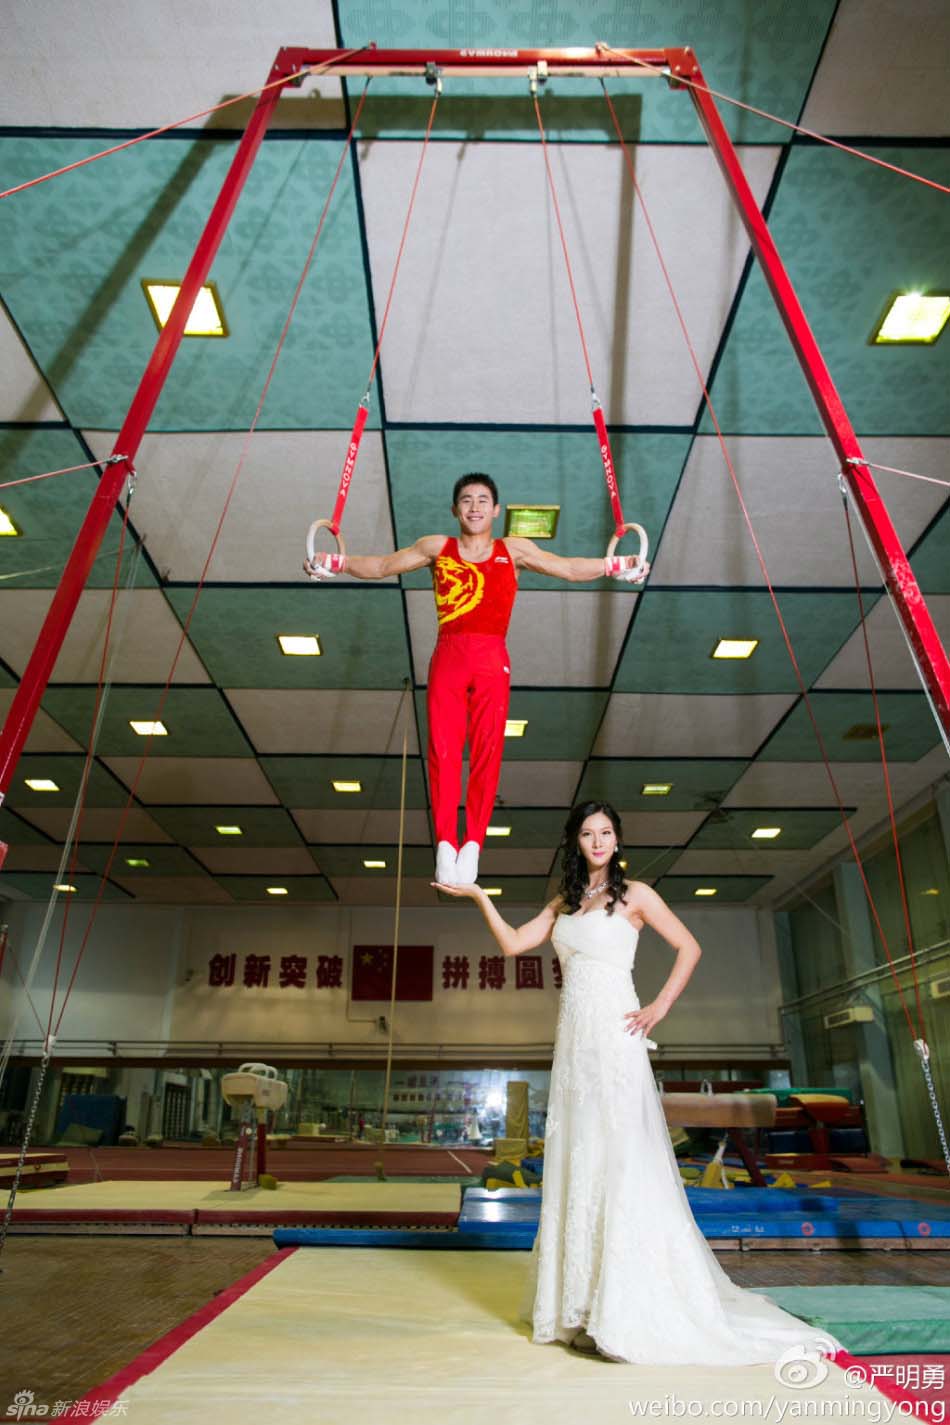 صور زفاف صعبة لبطل جمباز صيني  (4)